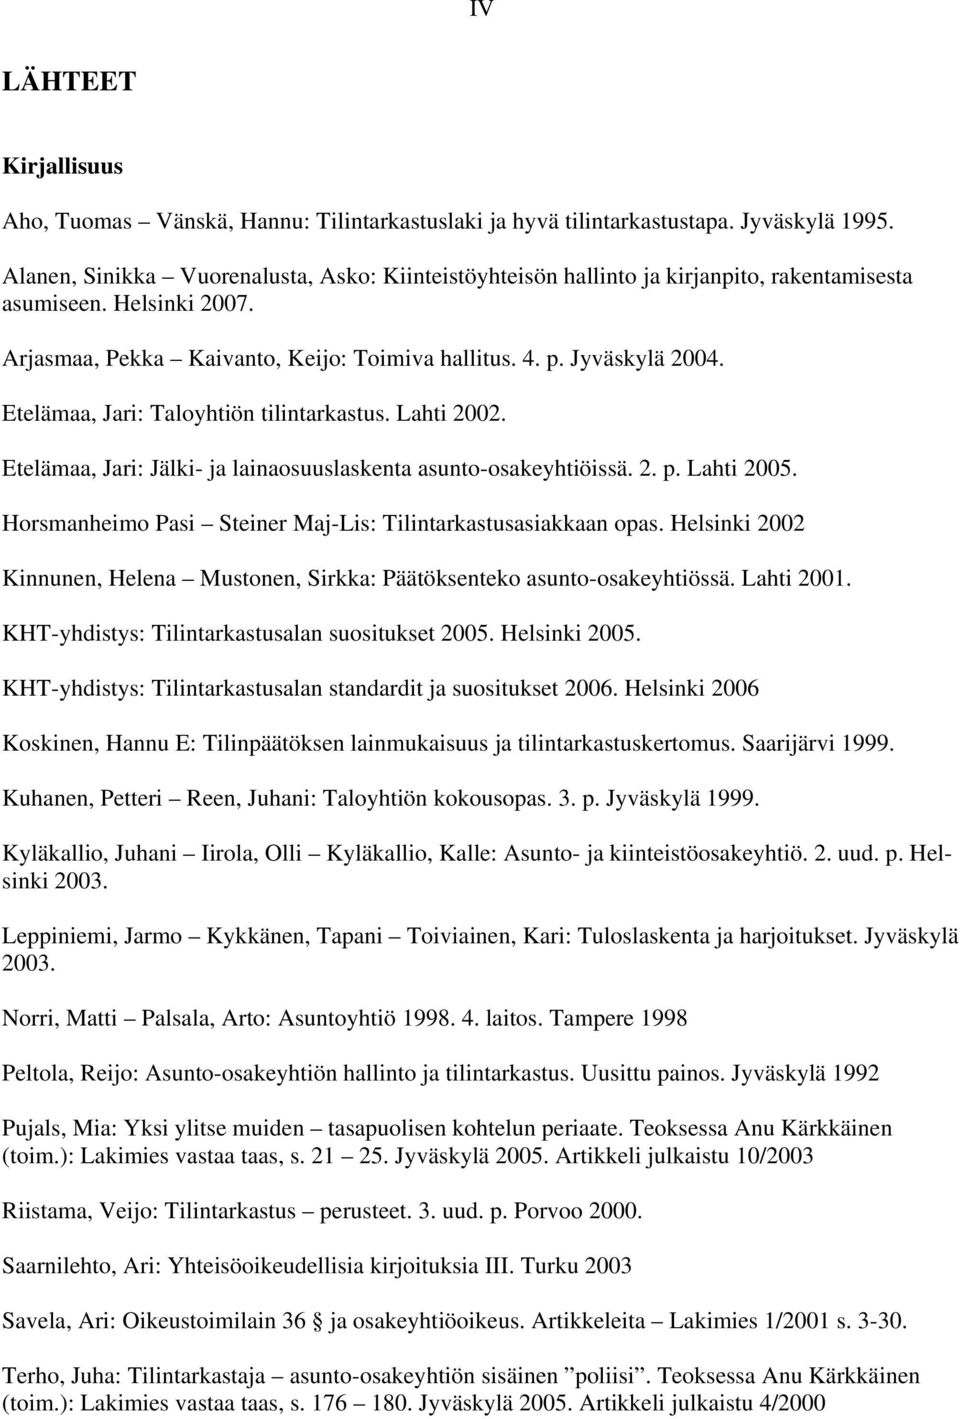 Etelämaa, Jari: Taloyhtiön tilintarkastus. Lahti 2002. Etelämaa, Jari: Jälki- ja lainaosuuslaskenta asunto-osakeyhtiöissä. 2. p. Lahti 2005.